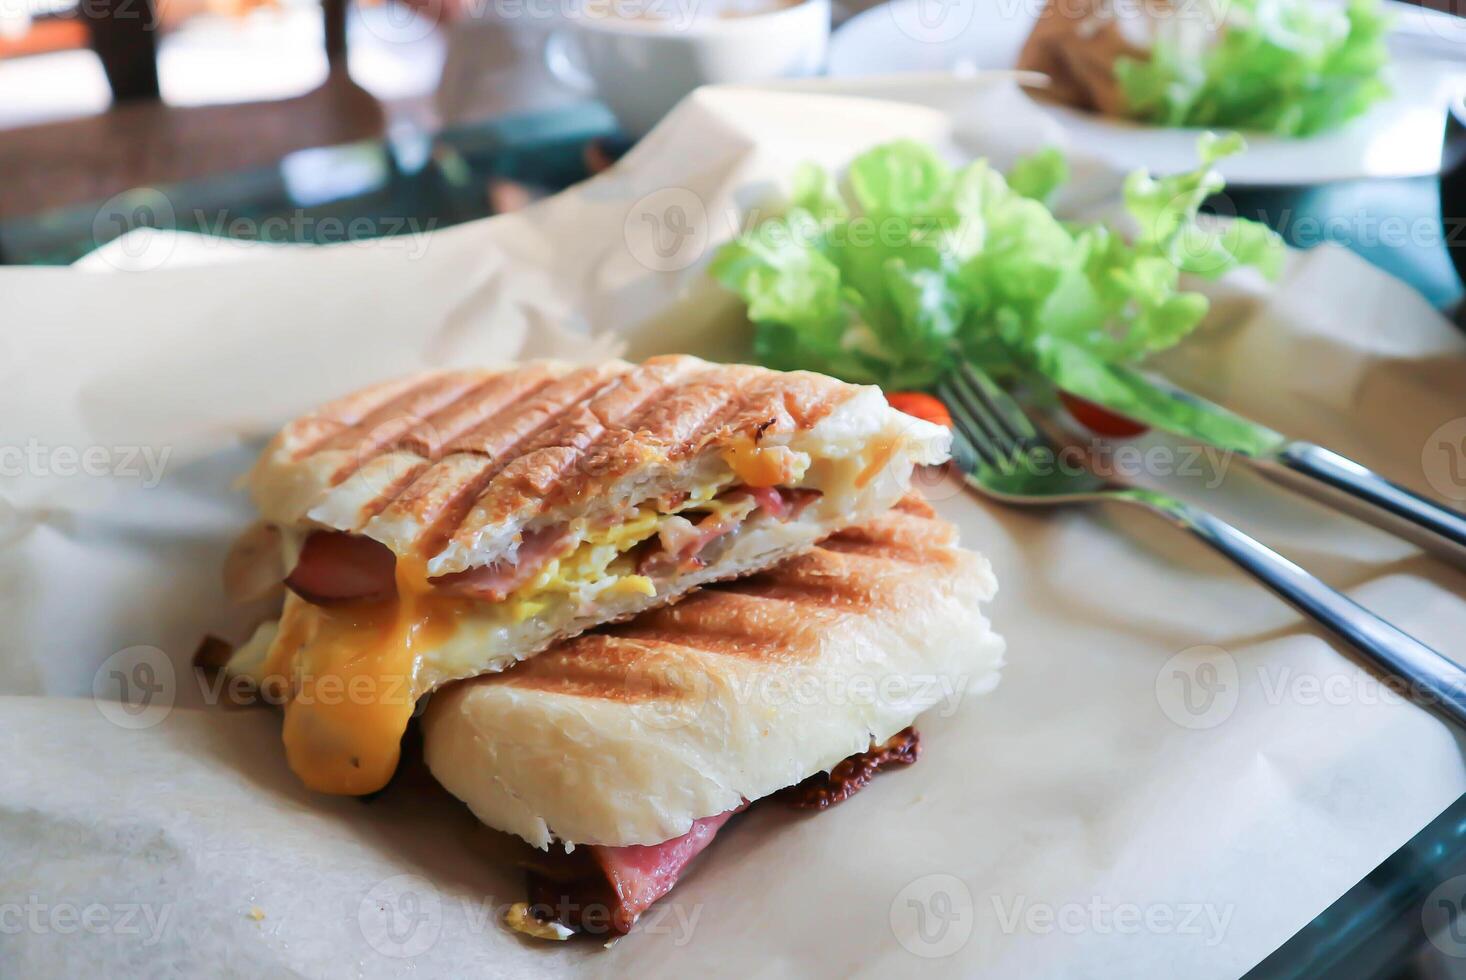 paninis, italien sandwich et salade ou jambon et fromage sandwich dans le papier photo